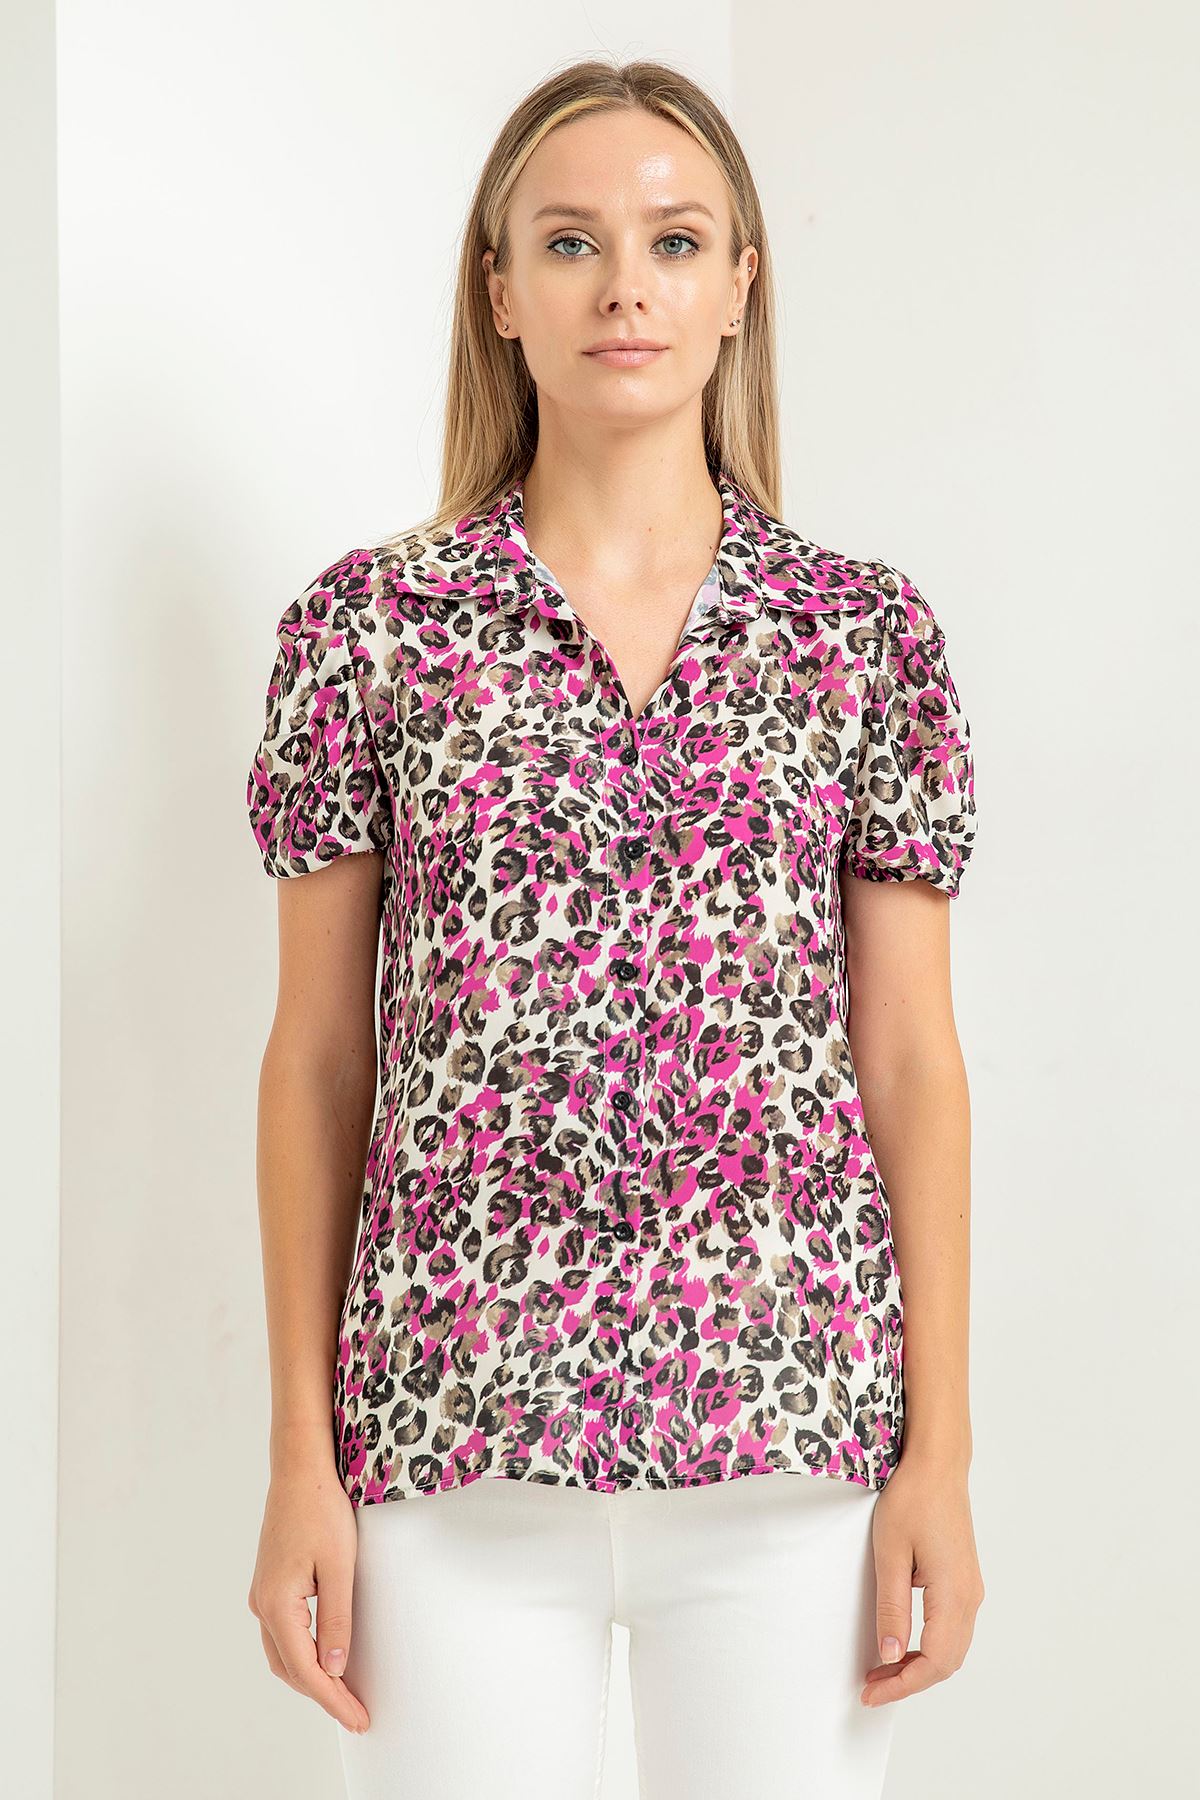 Jesica Fabric Short Sleeve Hip Height Leopard Print Women'S Shirt - Fuchıa